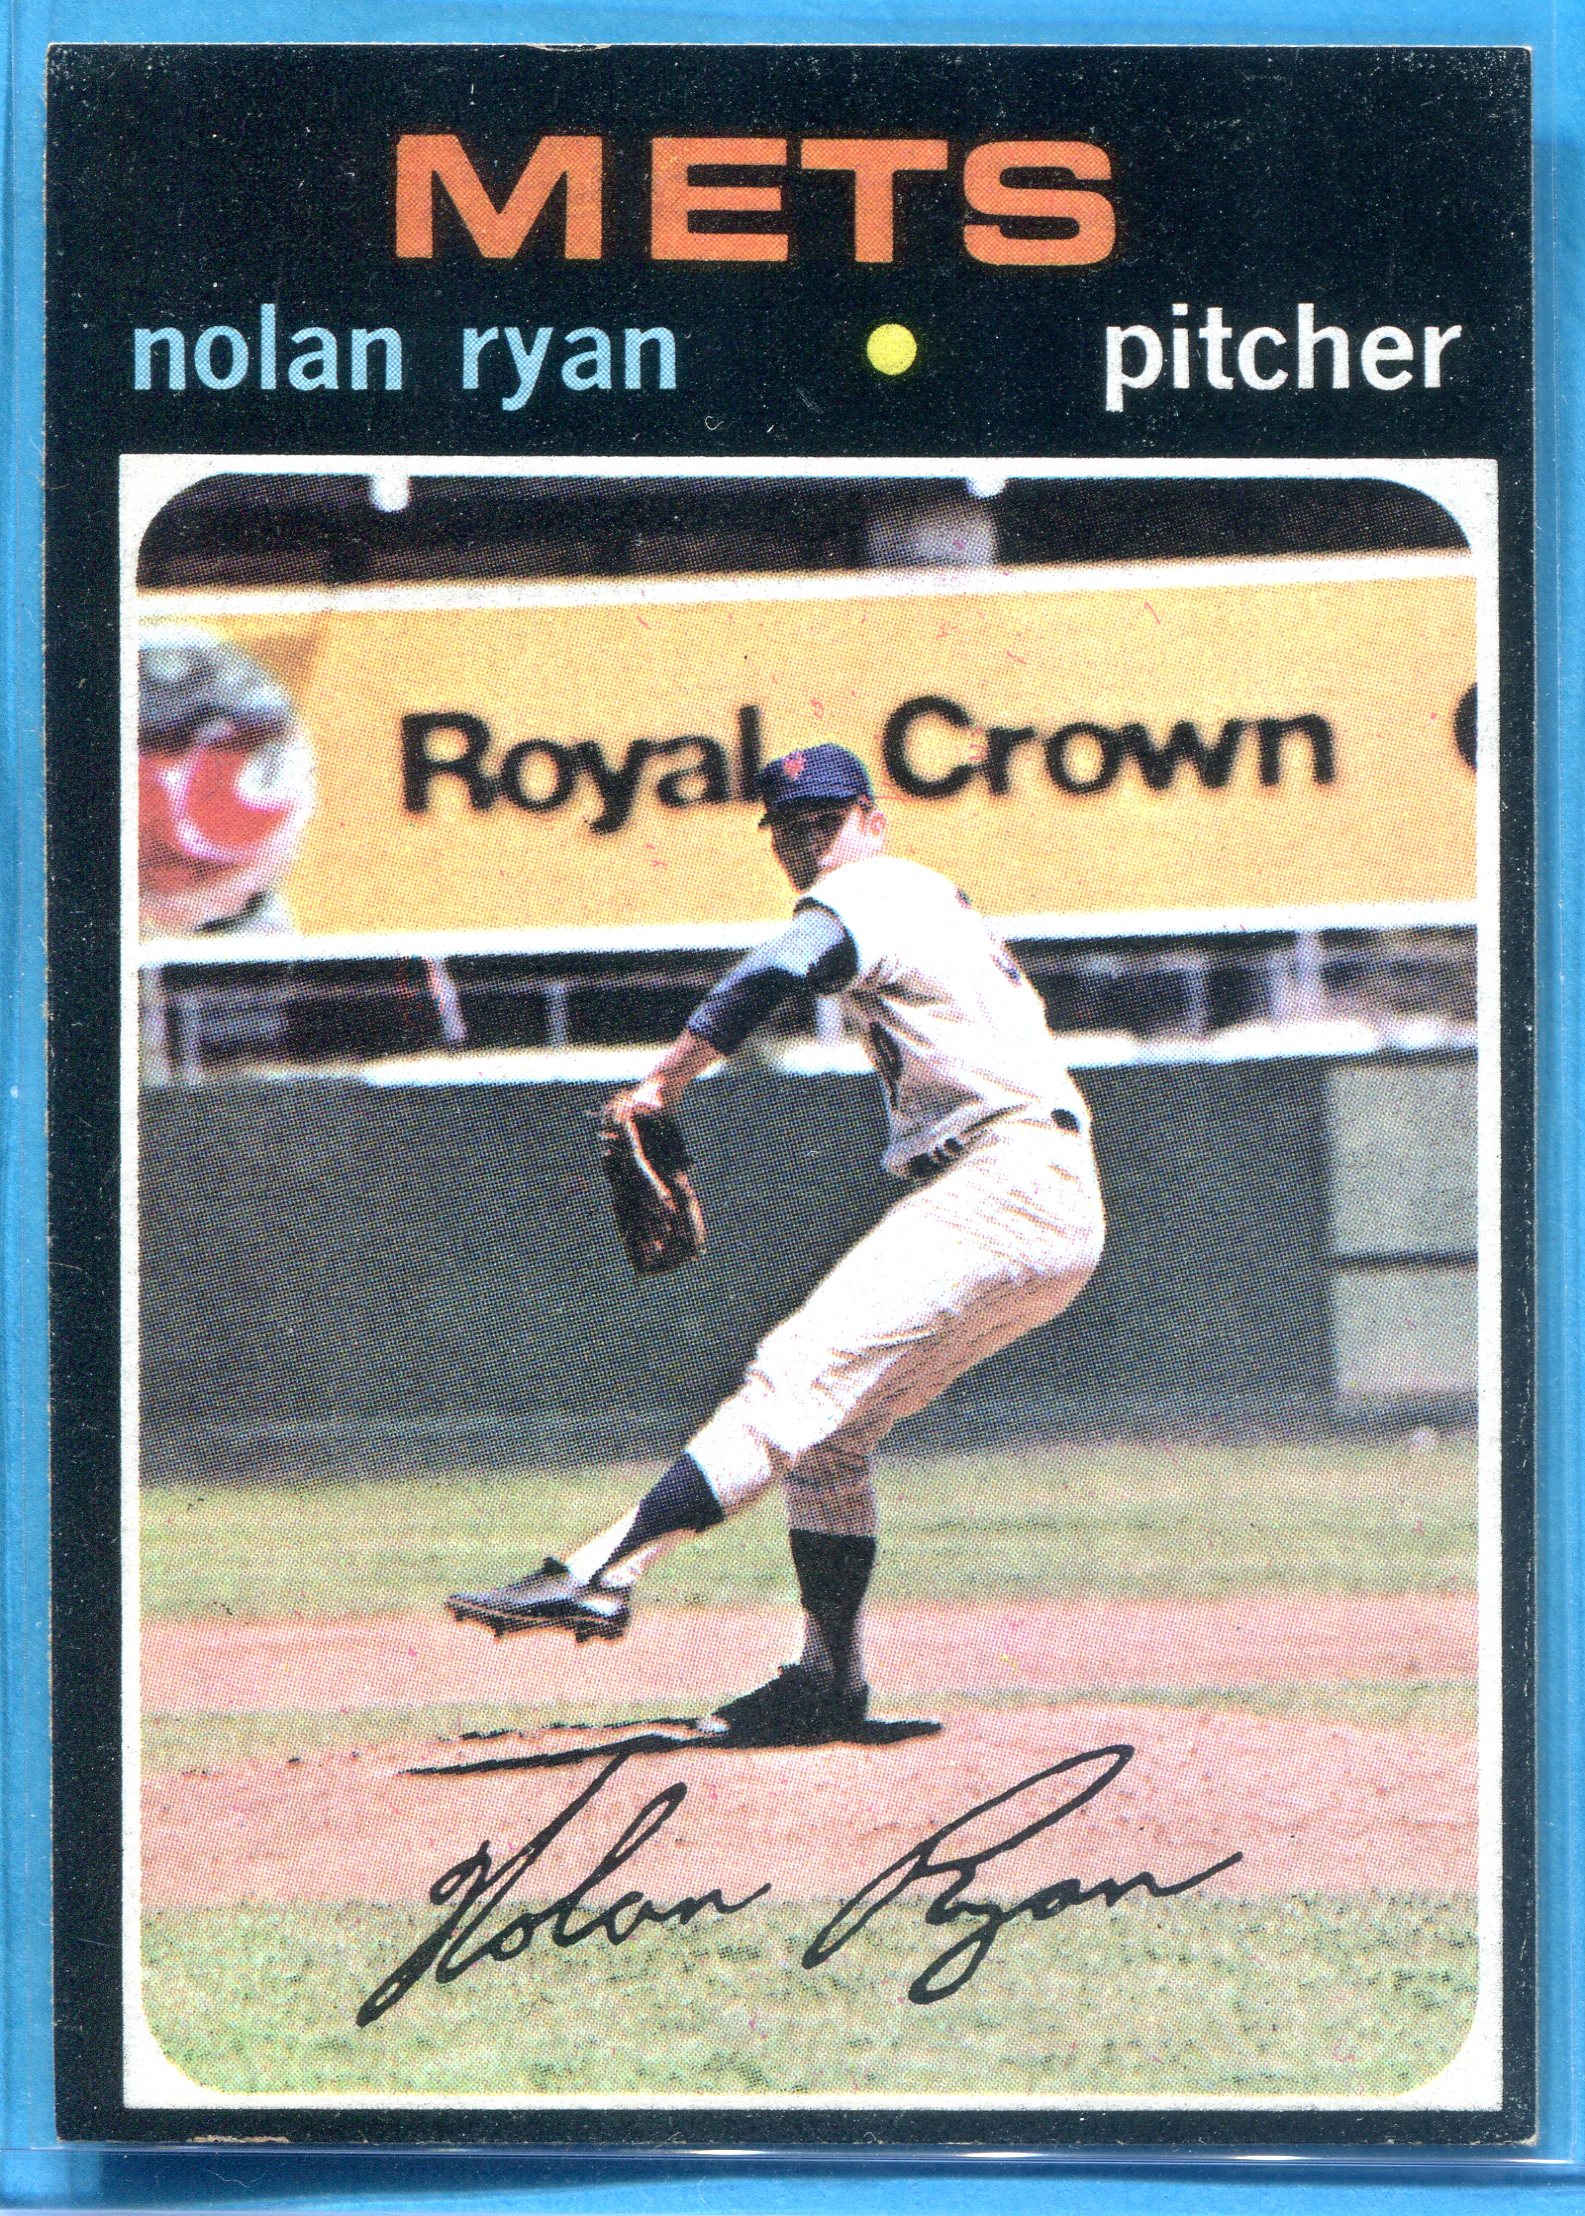 1971 Topps #513 Nolan Ryan